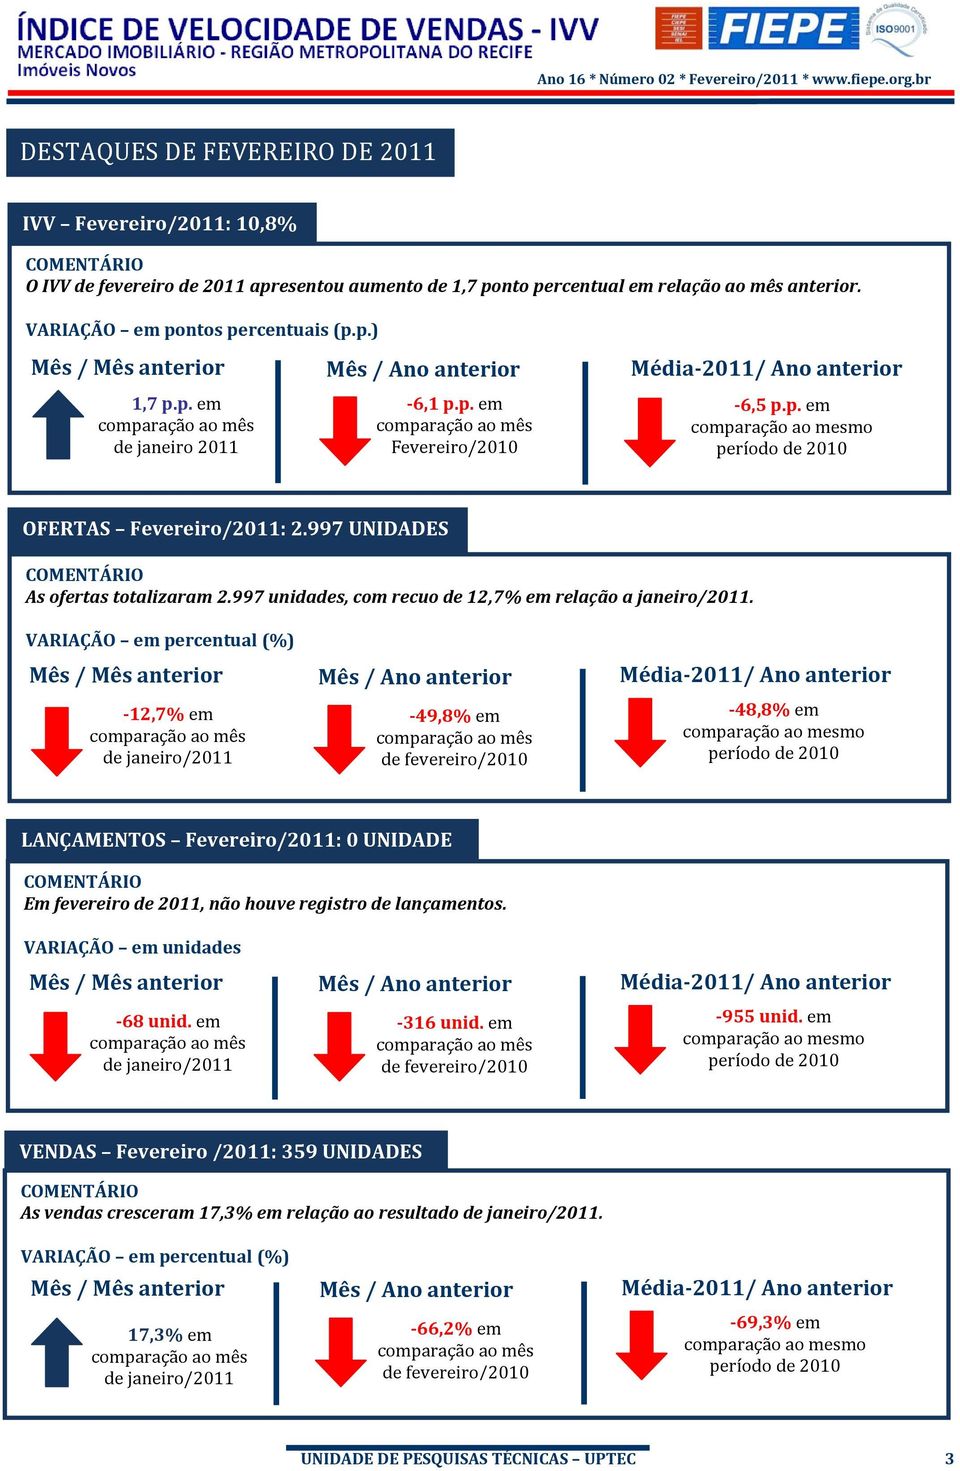 997 UNIDADES COMENTÁRIO As ofertas totalizaram 2.997 unidades, com recuo de 12,7% em relação a janeiro/2011.